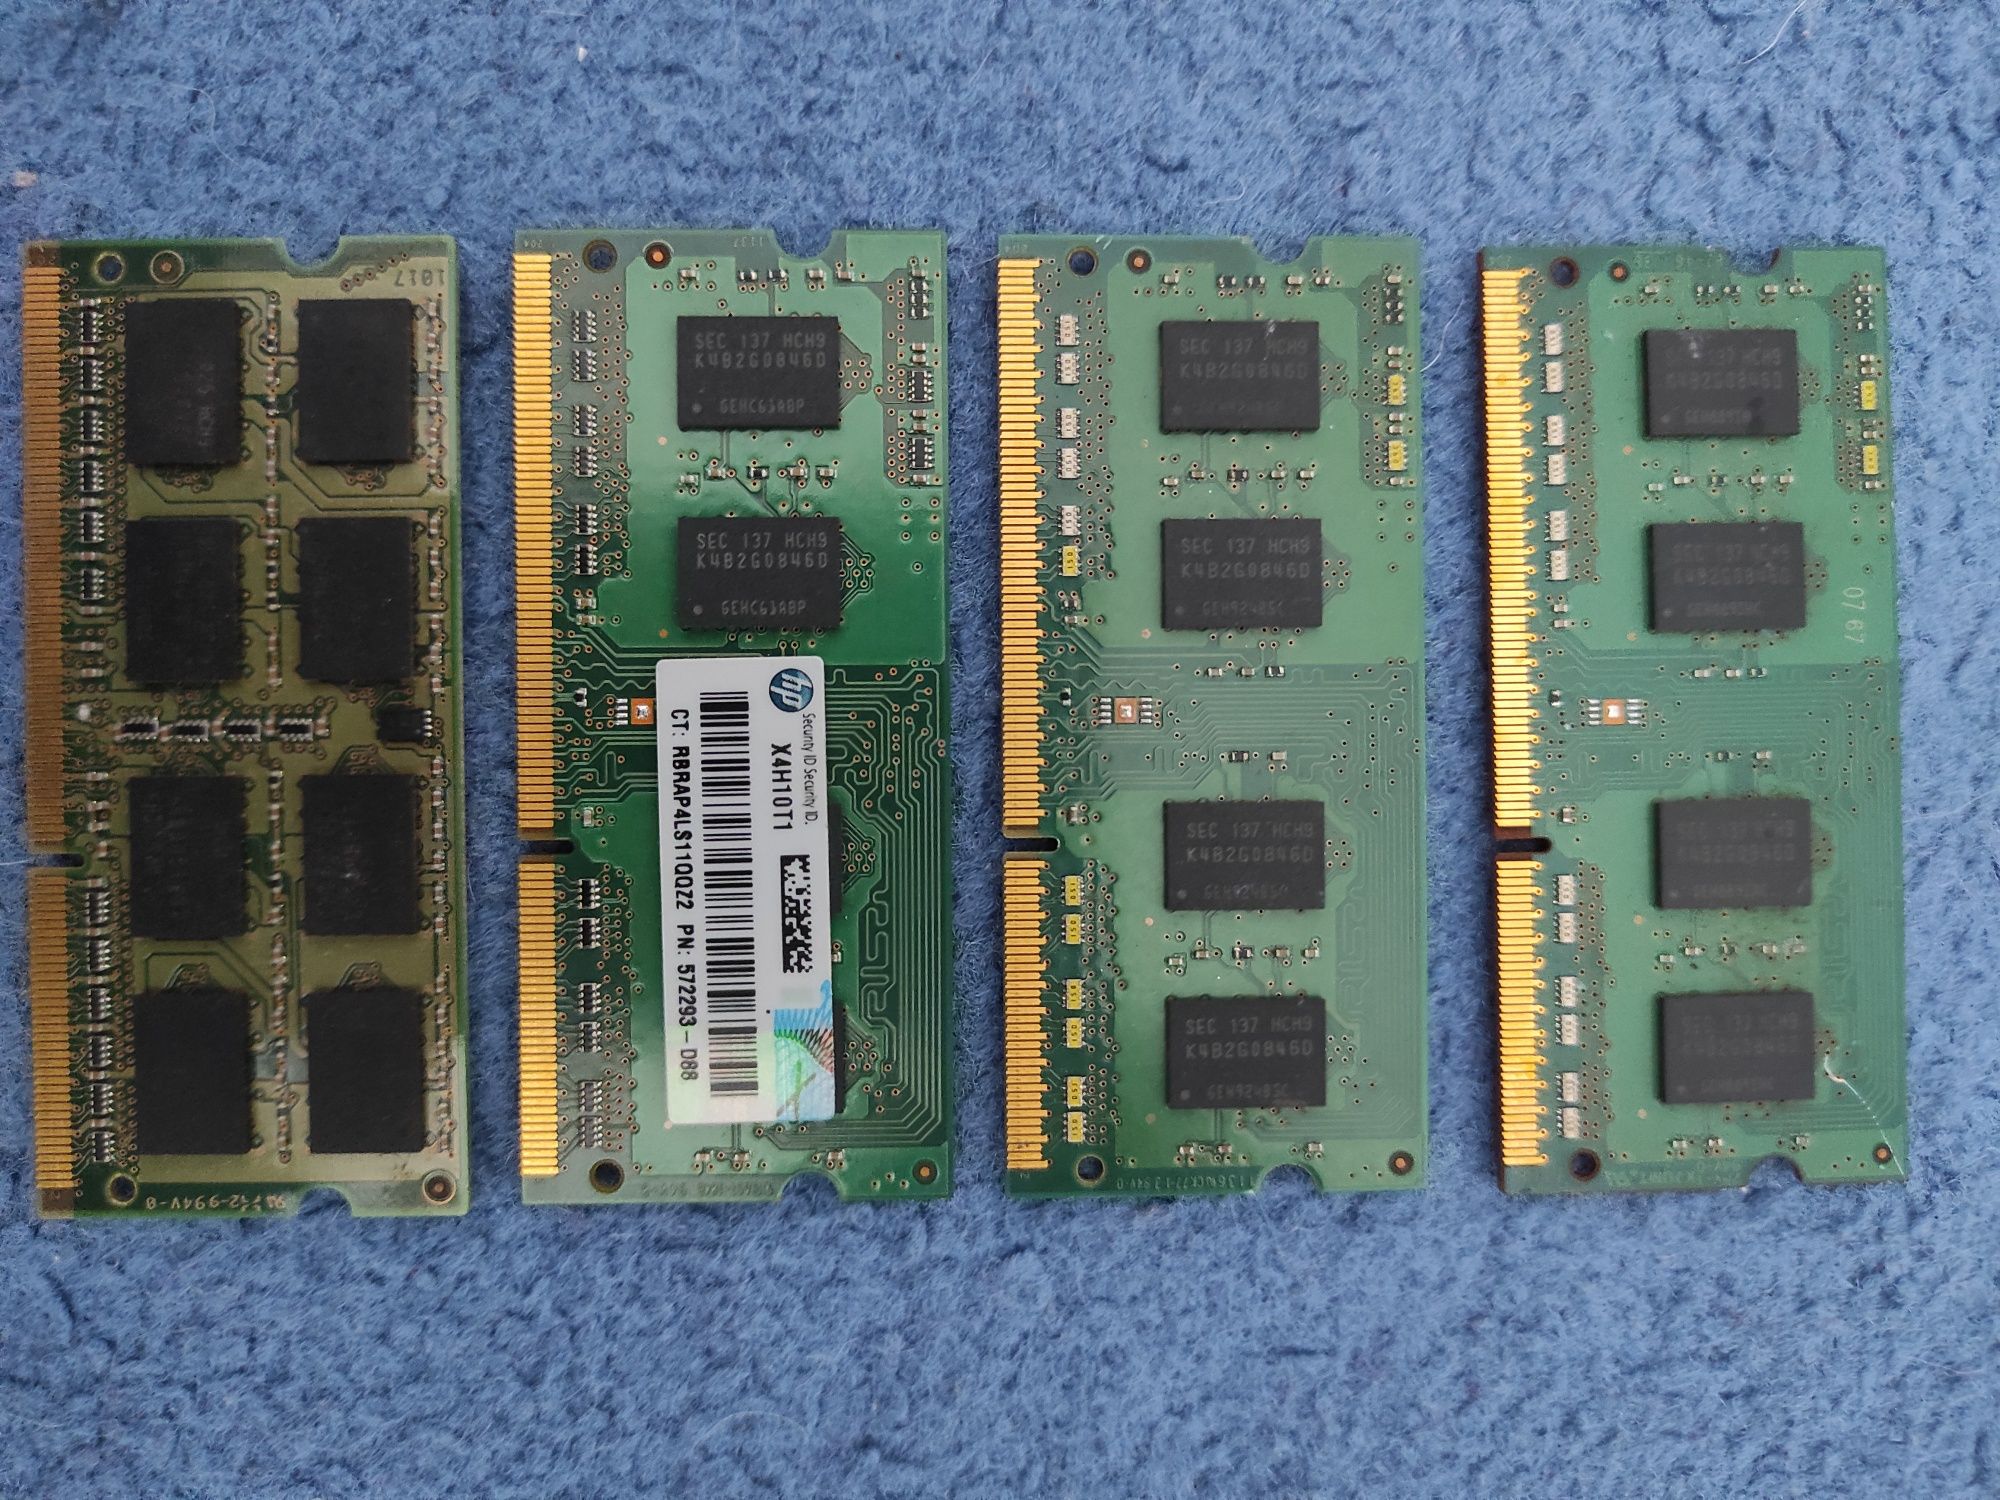 4 x Sodimm DDR3 po 2 GB każda